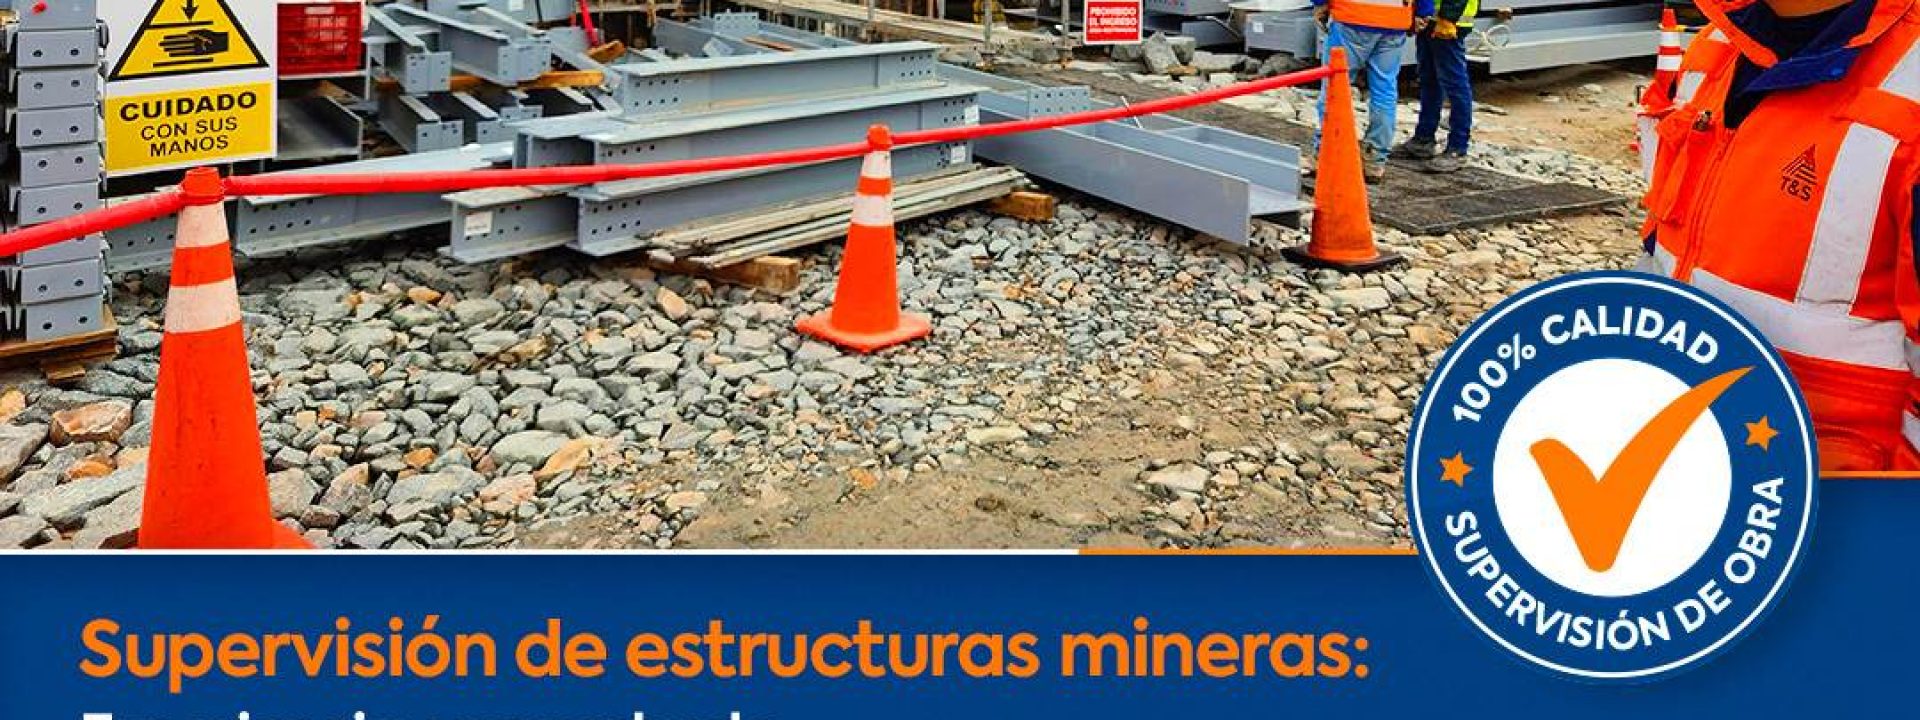 upervisión en construcciones mineras: la clave para un proyecto seguro, eficiente y de calidad